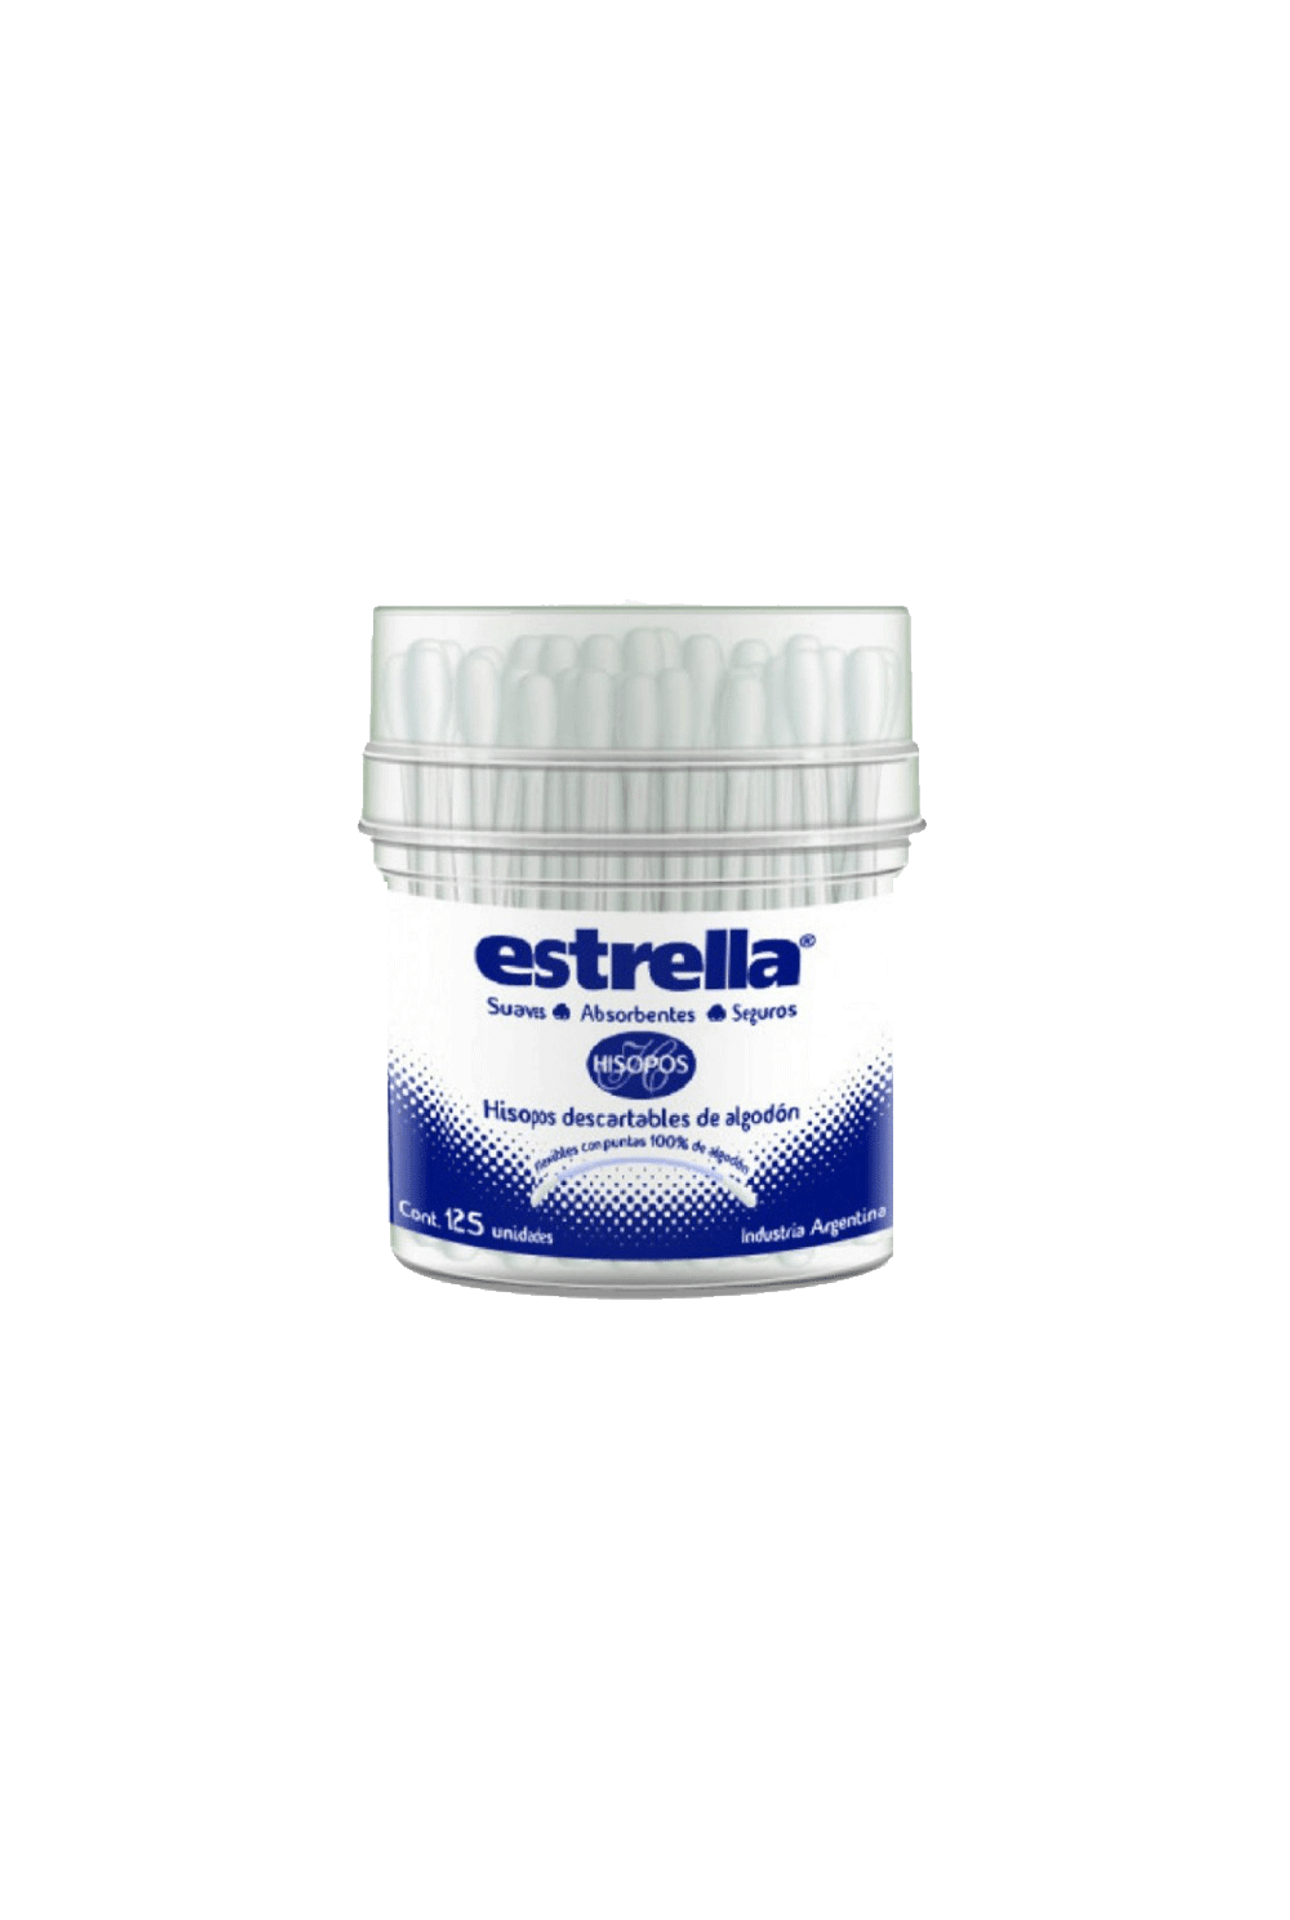 Estrella-Hisopos-Descartables-Estrella-Pote-x-125-Unid-7790064104716_img1